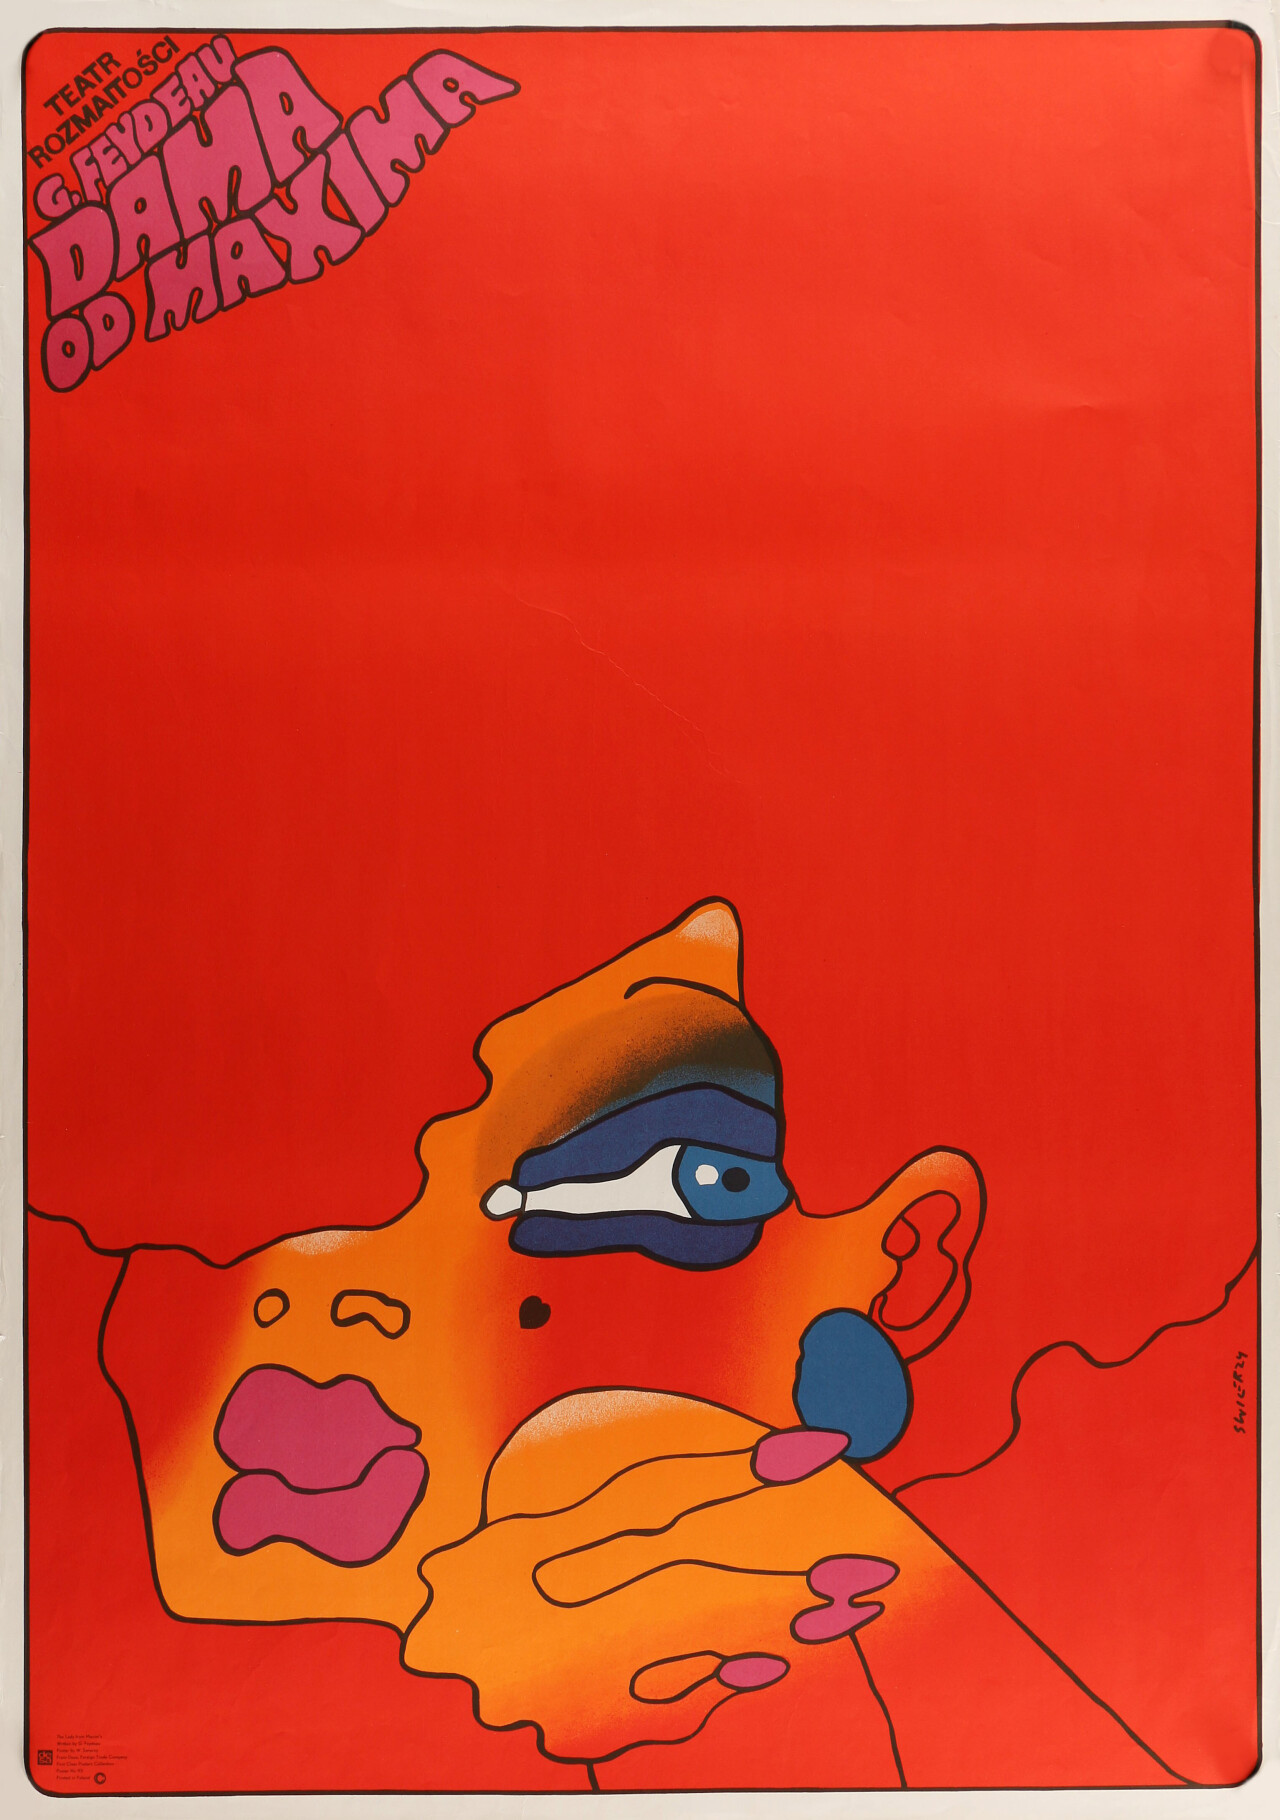 Польский постер, автор Вальдемар Свежи (графический дизайн, 1970 год)